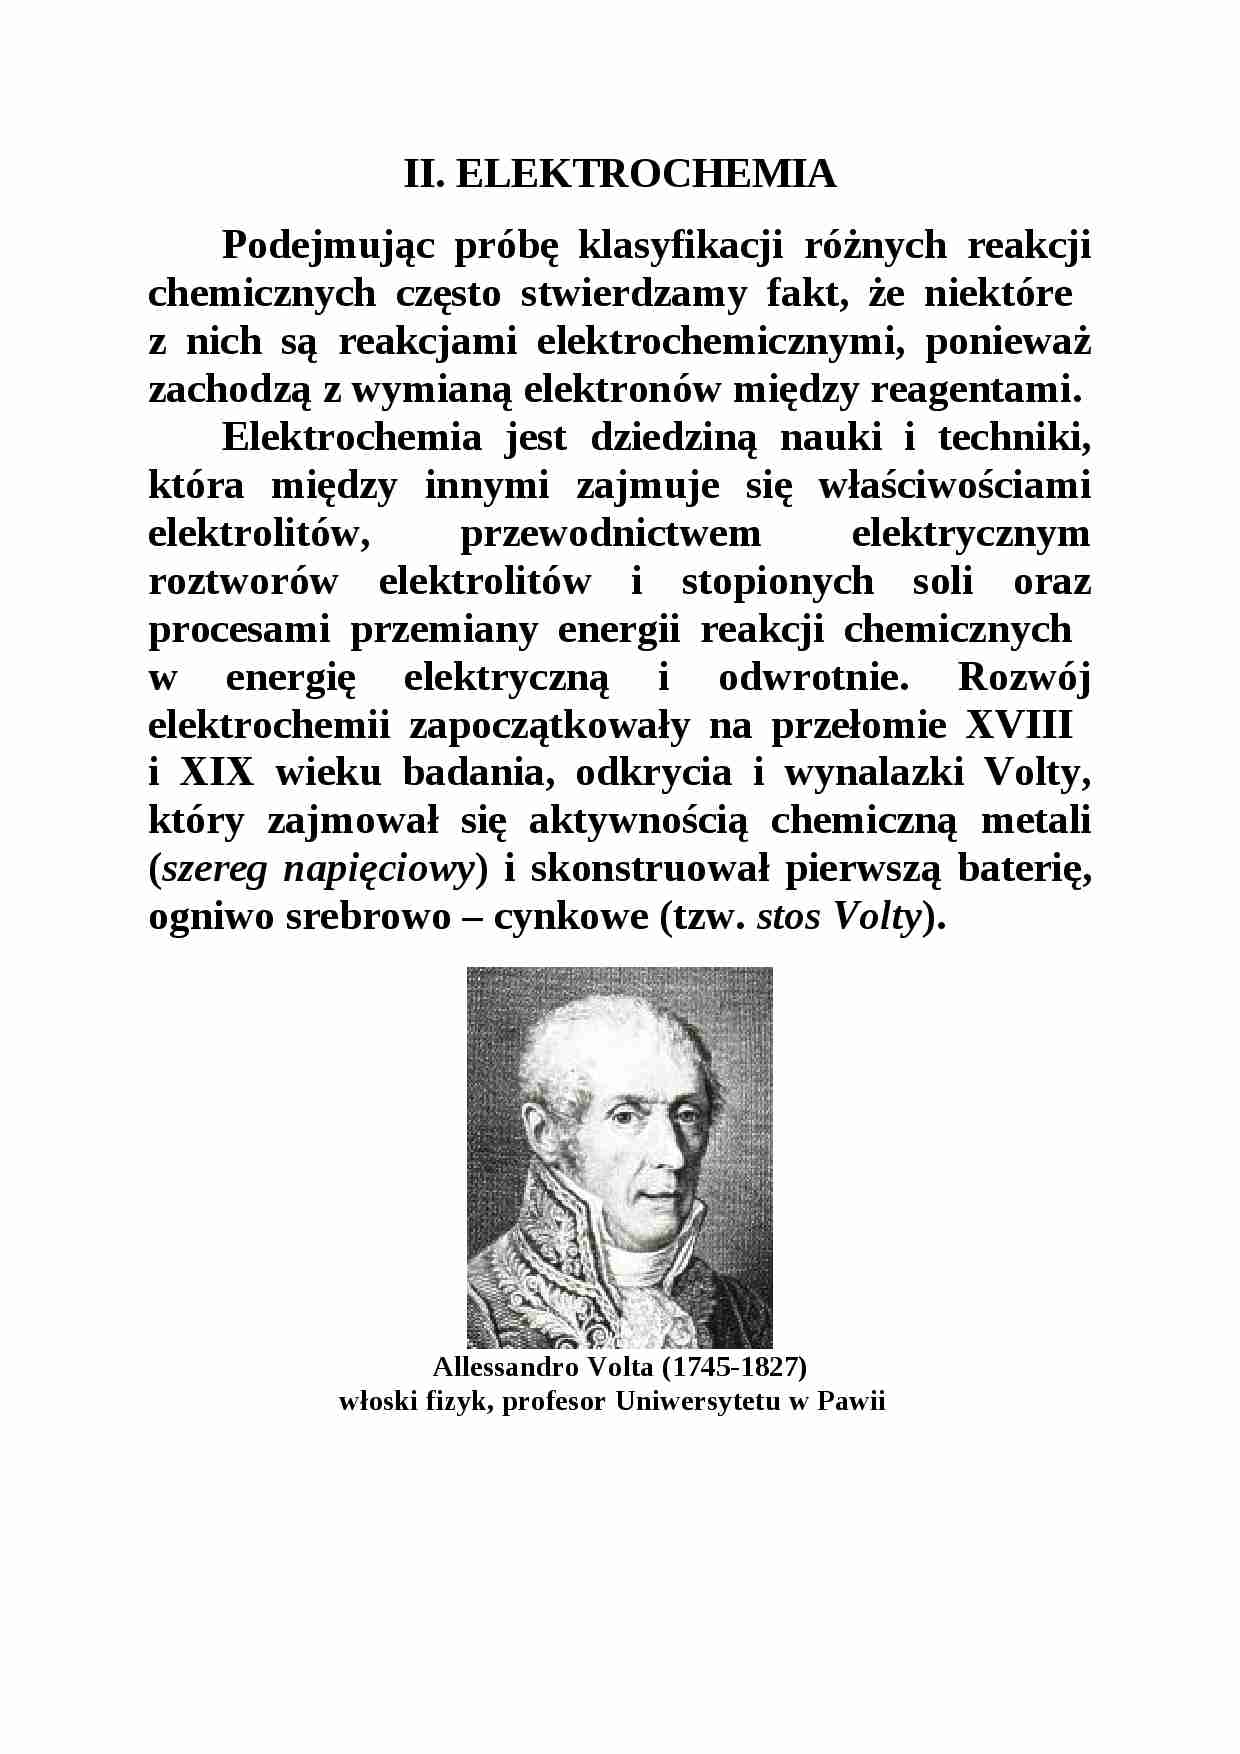 Elektrochemia - Wiesław Apostoluk - strona 1